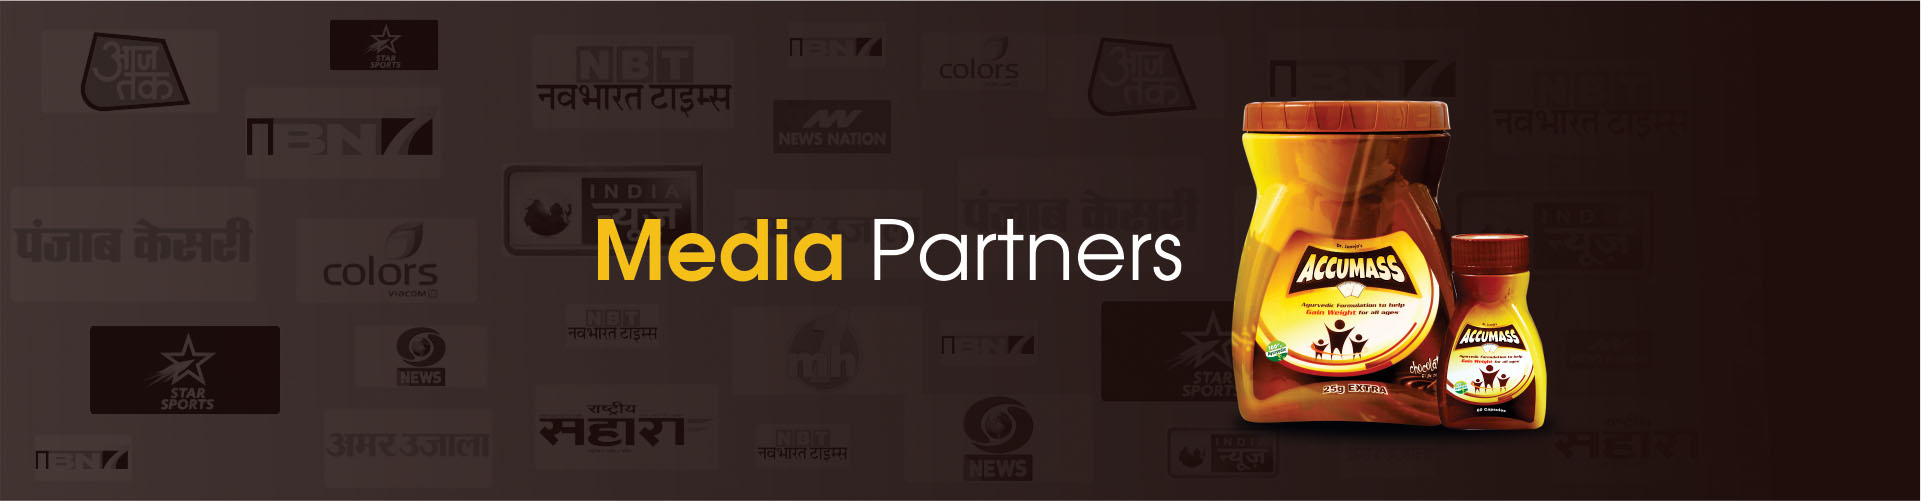 accumass media partner